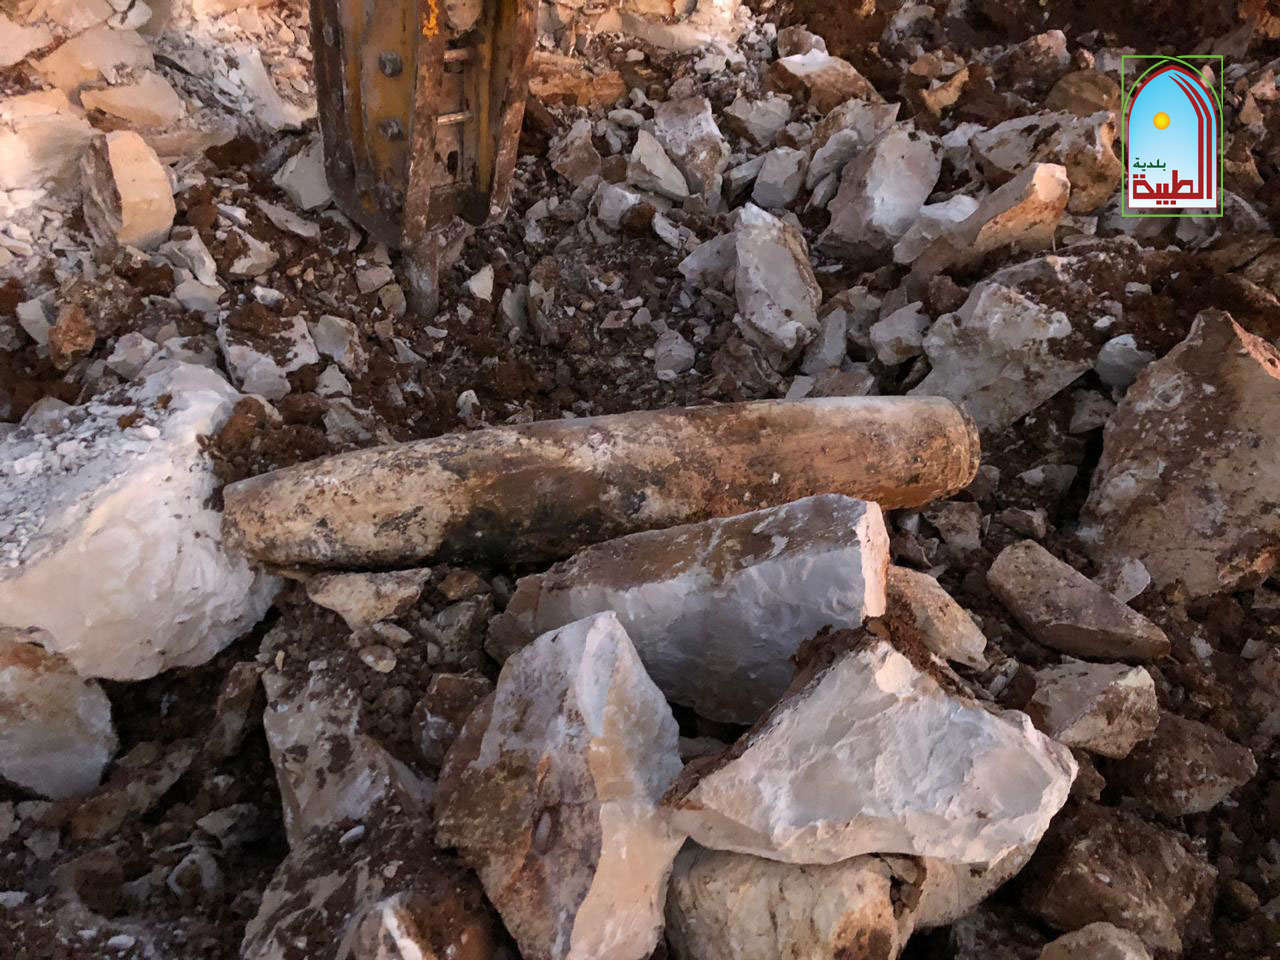 العثور على صاروخ قديم من مخلفات العدو الاسرائيلي بين الطيبة ودير سريان